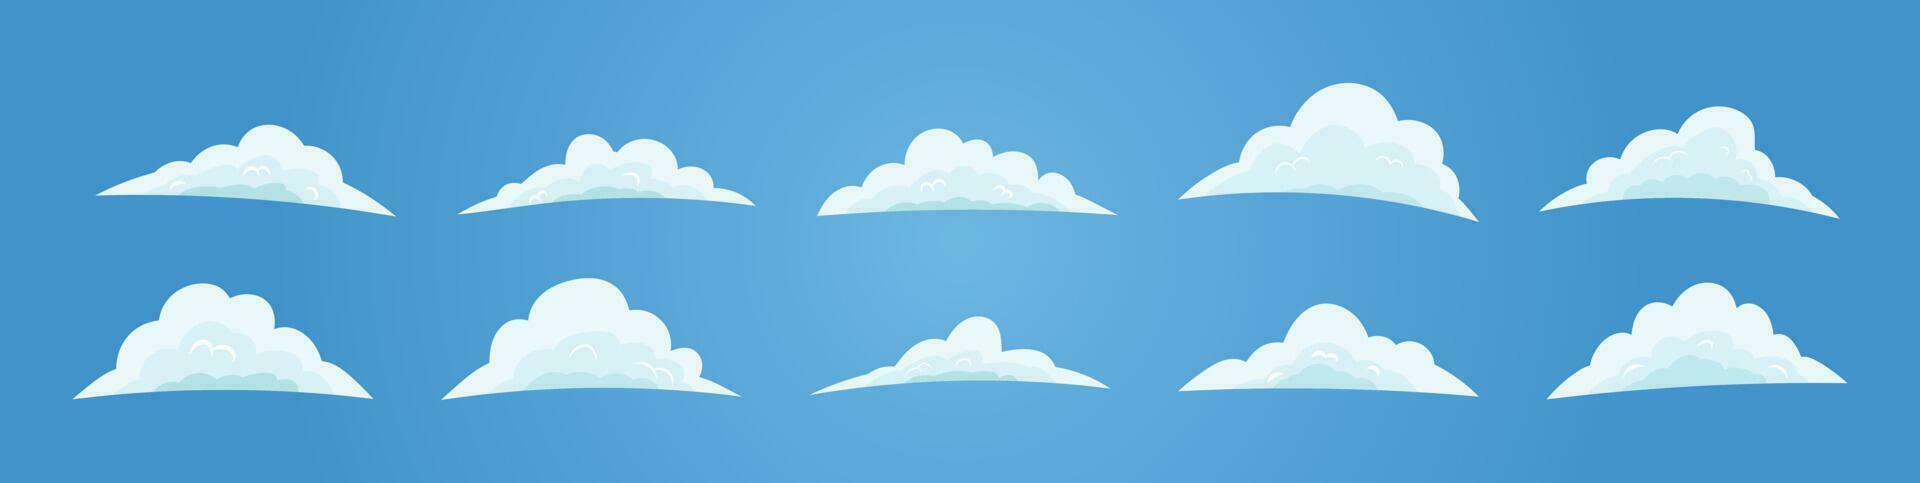 cielo plano diseño dibujos animados nube vector